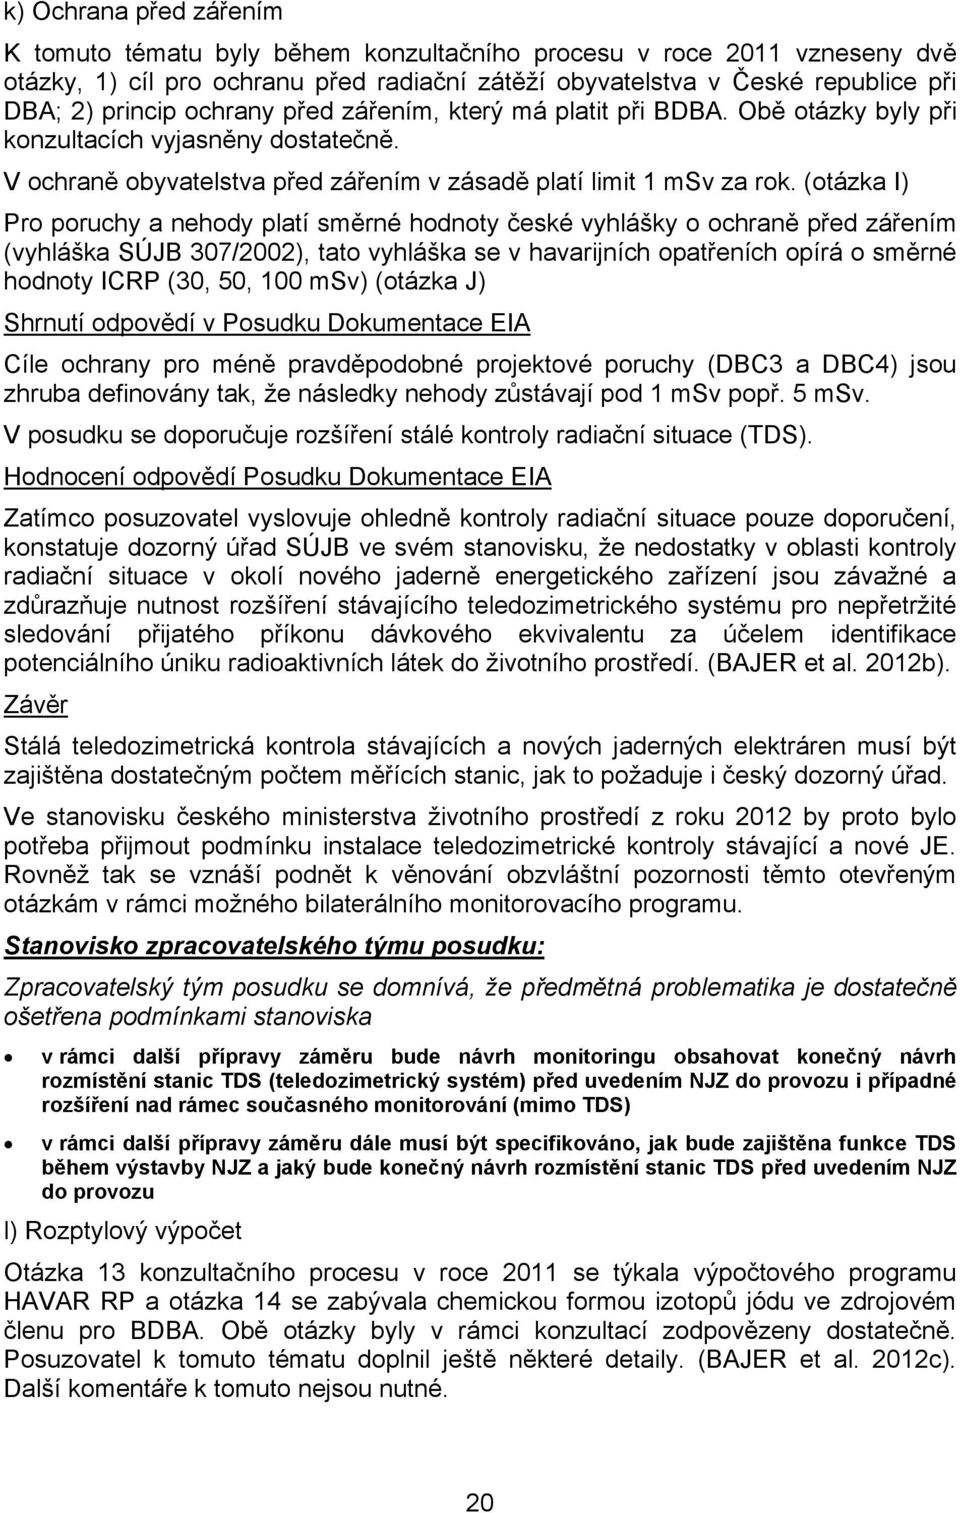 (otázka I) Pro poruchy a nehody platí směrné hodnoty české vyhlášky o ochraně před zářením (vyhláška SÚJB 307/2002), tato vyhláška se v havarijních opatřeních opírá o směrné hodnoty ICRP (30, 50, 100